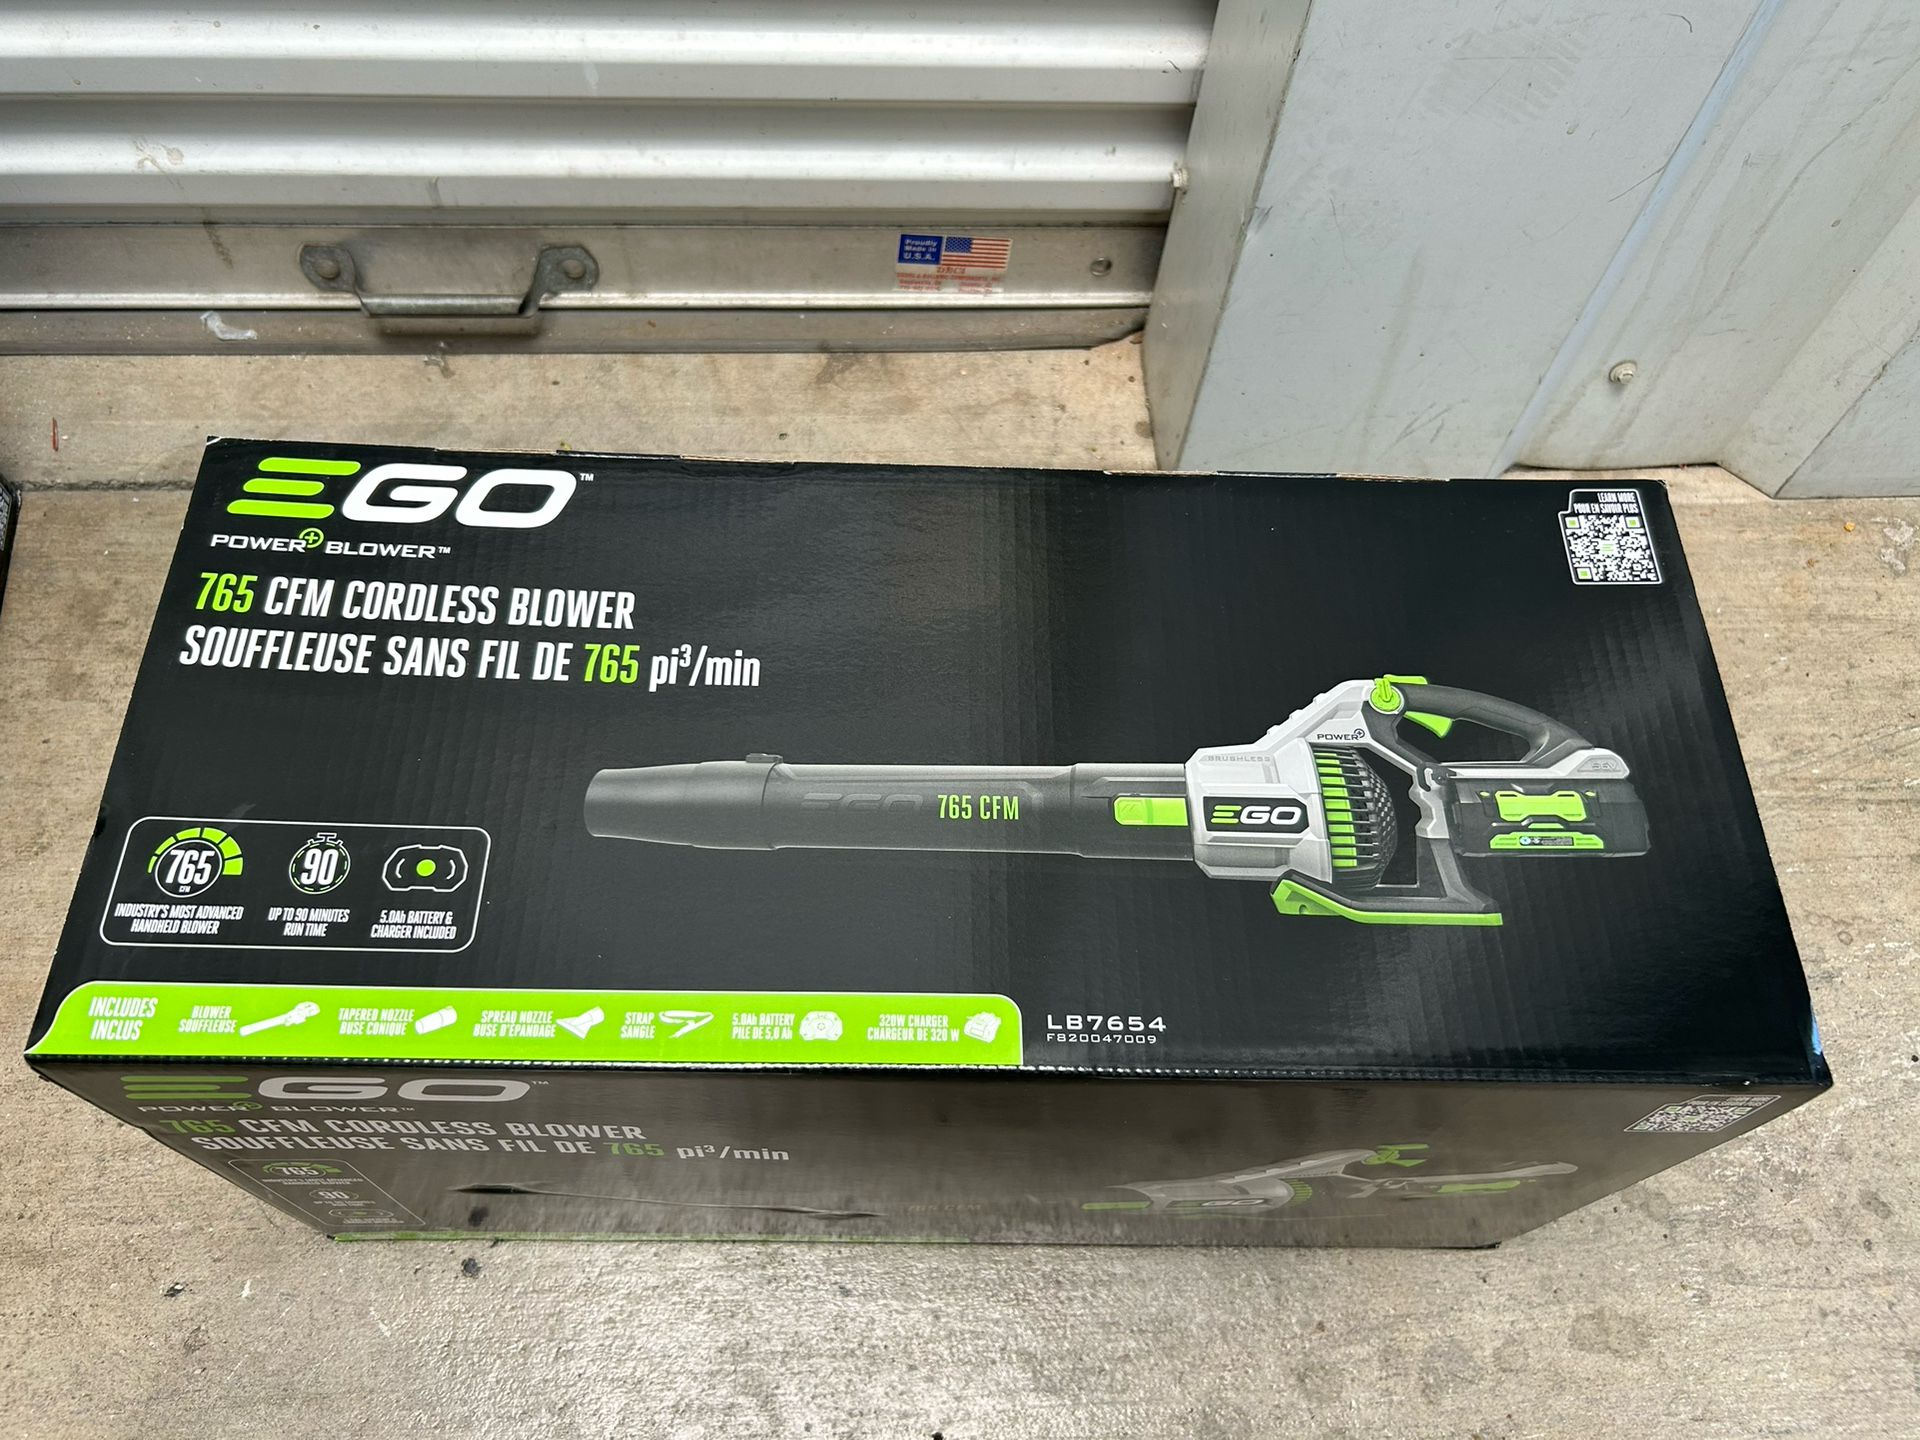 EGO leaf blower